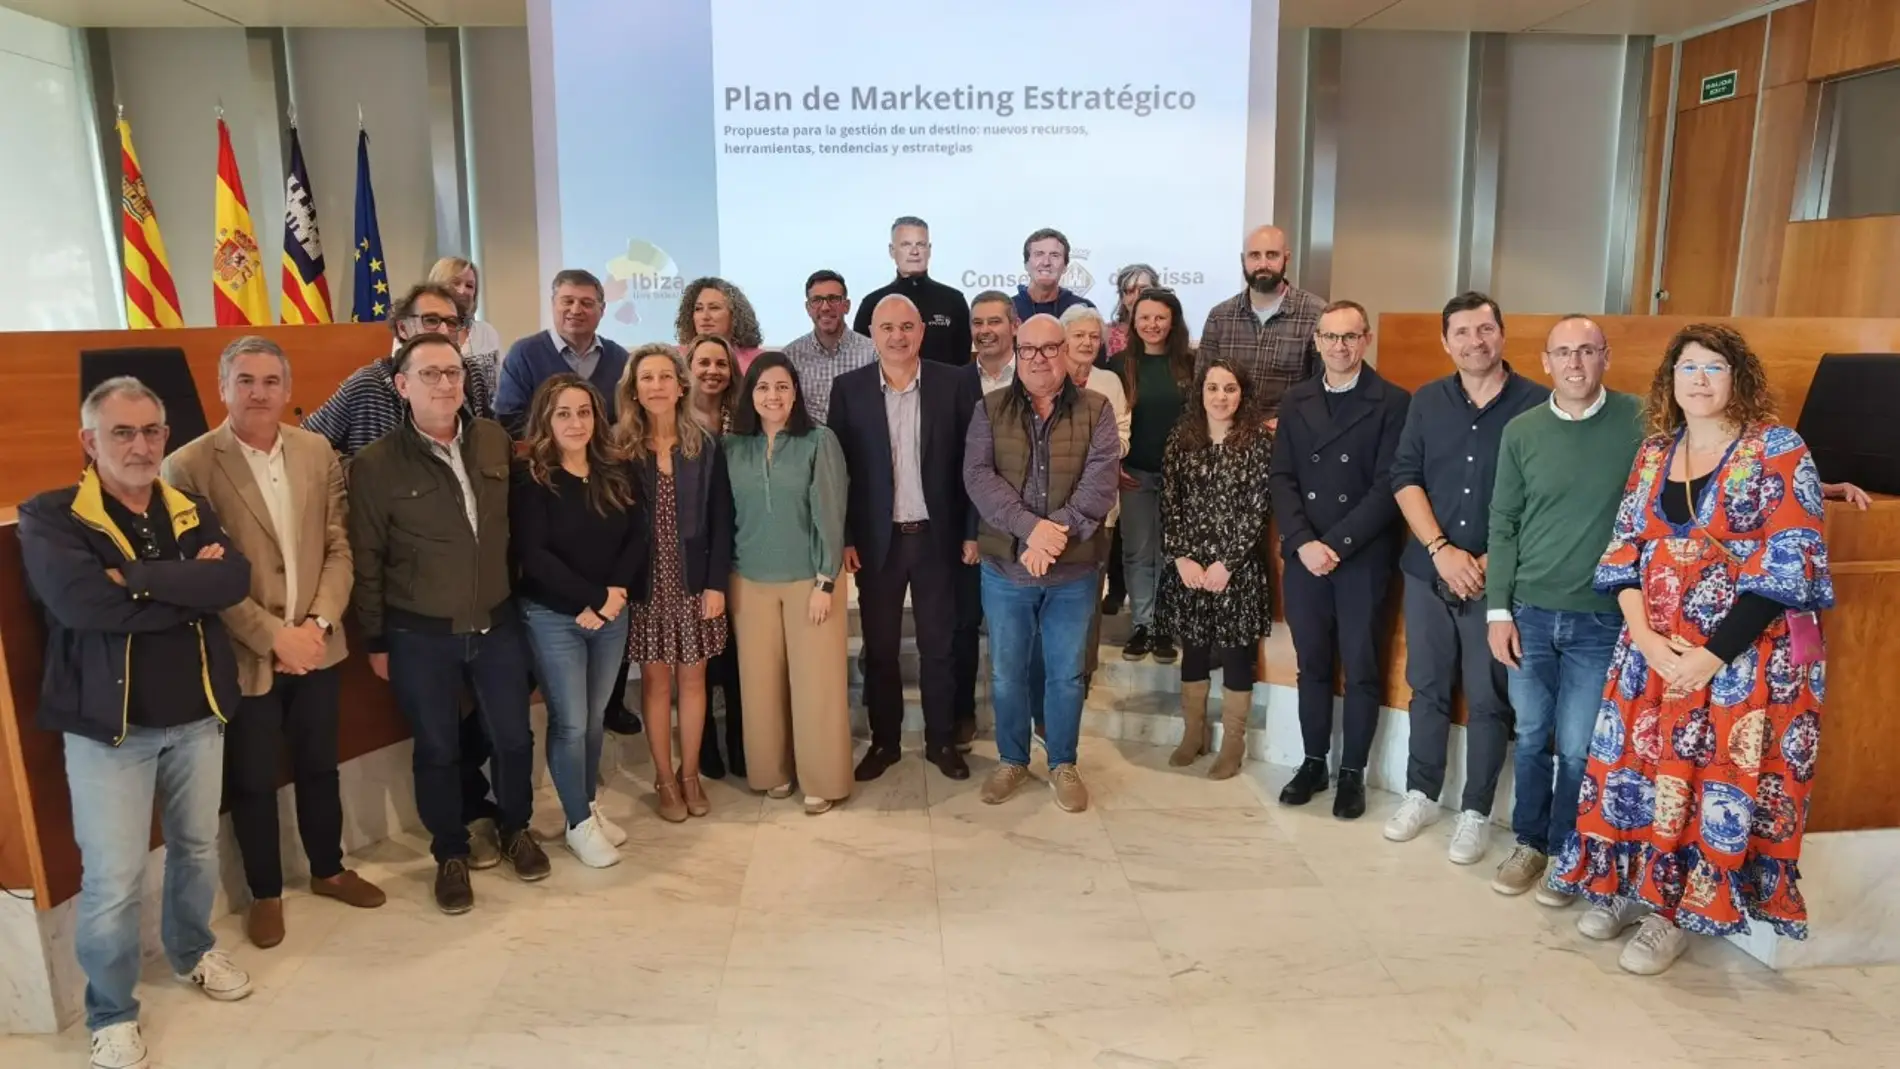 El Consell de Eivissa presenta un plan de marketing de su marca turística basado en la "sostenibilidad y la desestacionalización"